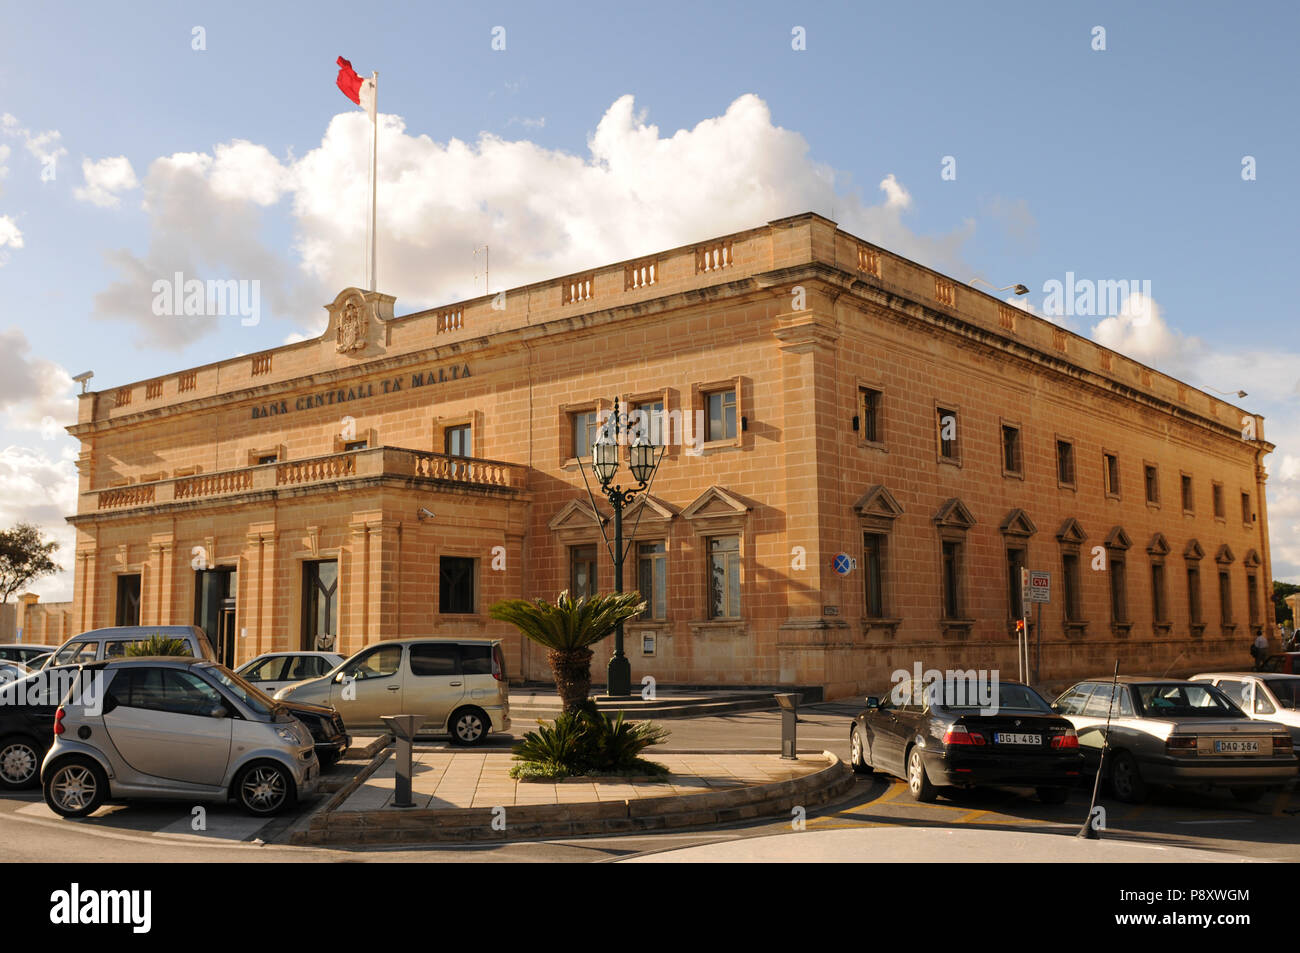 La banque centrale de Malte dans la vieille ville de La Valette sur l'île de Malte. Banque D'Images